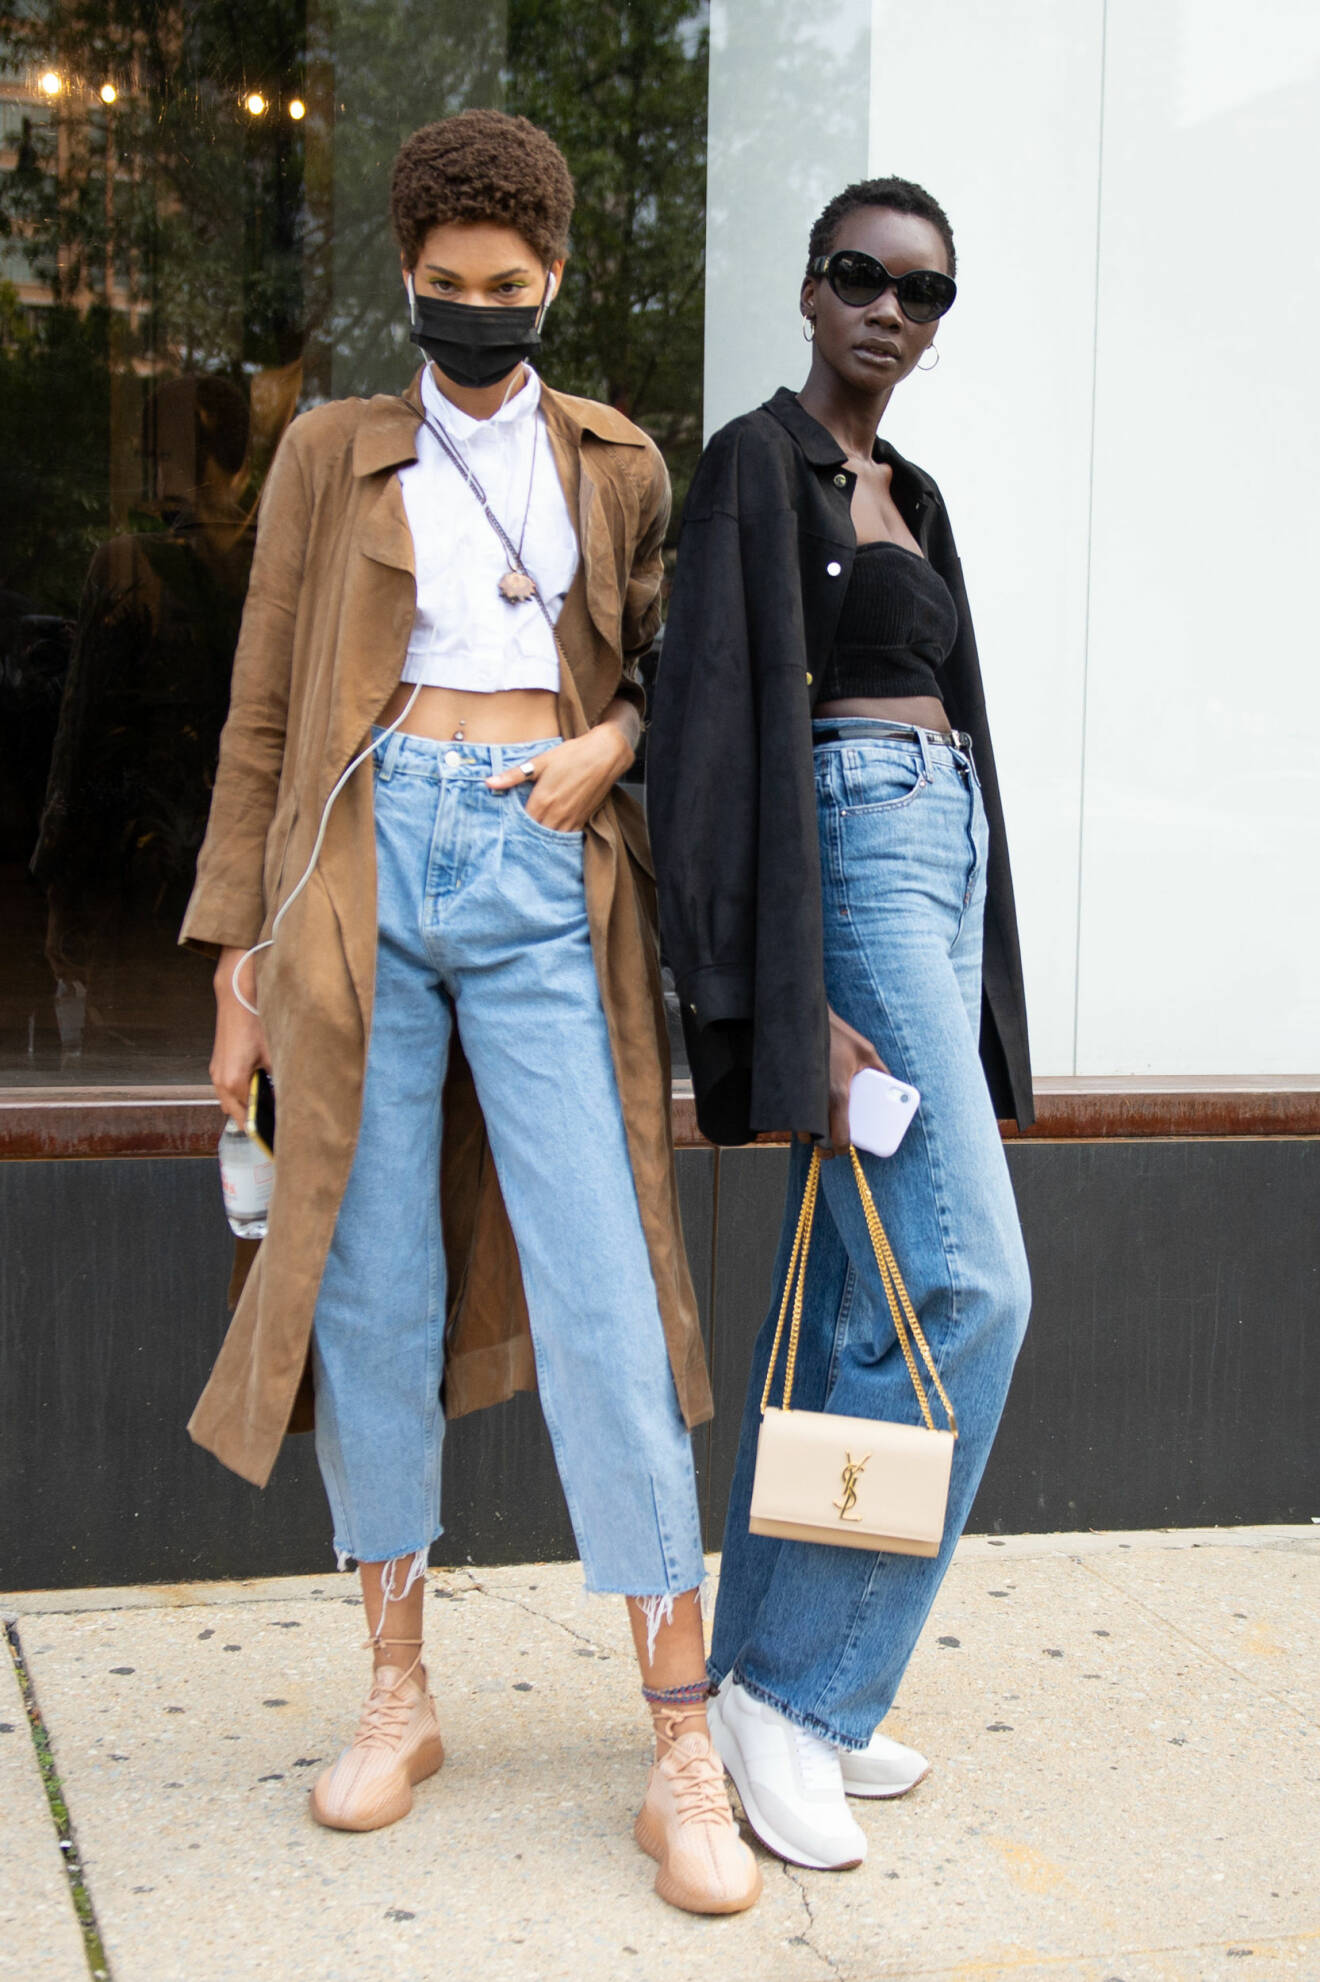 Två tjejer fotograferade på stan. Båda har jeans i blå nyans. Den ena har raka, långa och den andra croppade. Till det plagg i svart, brunt och vitt. Street style-bild.